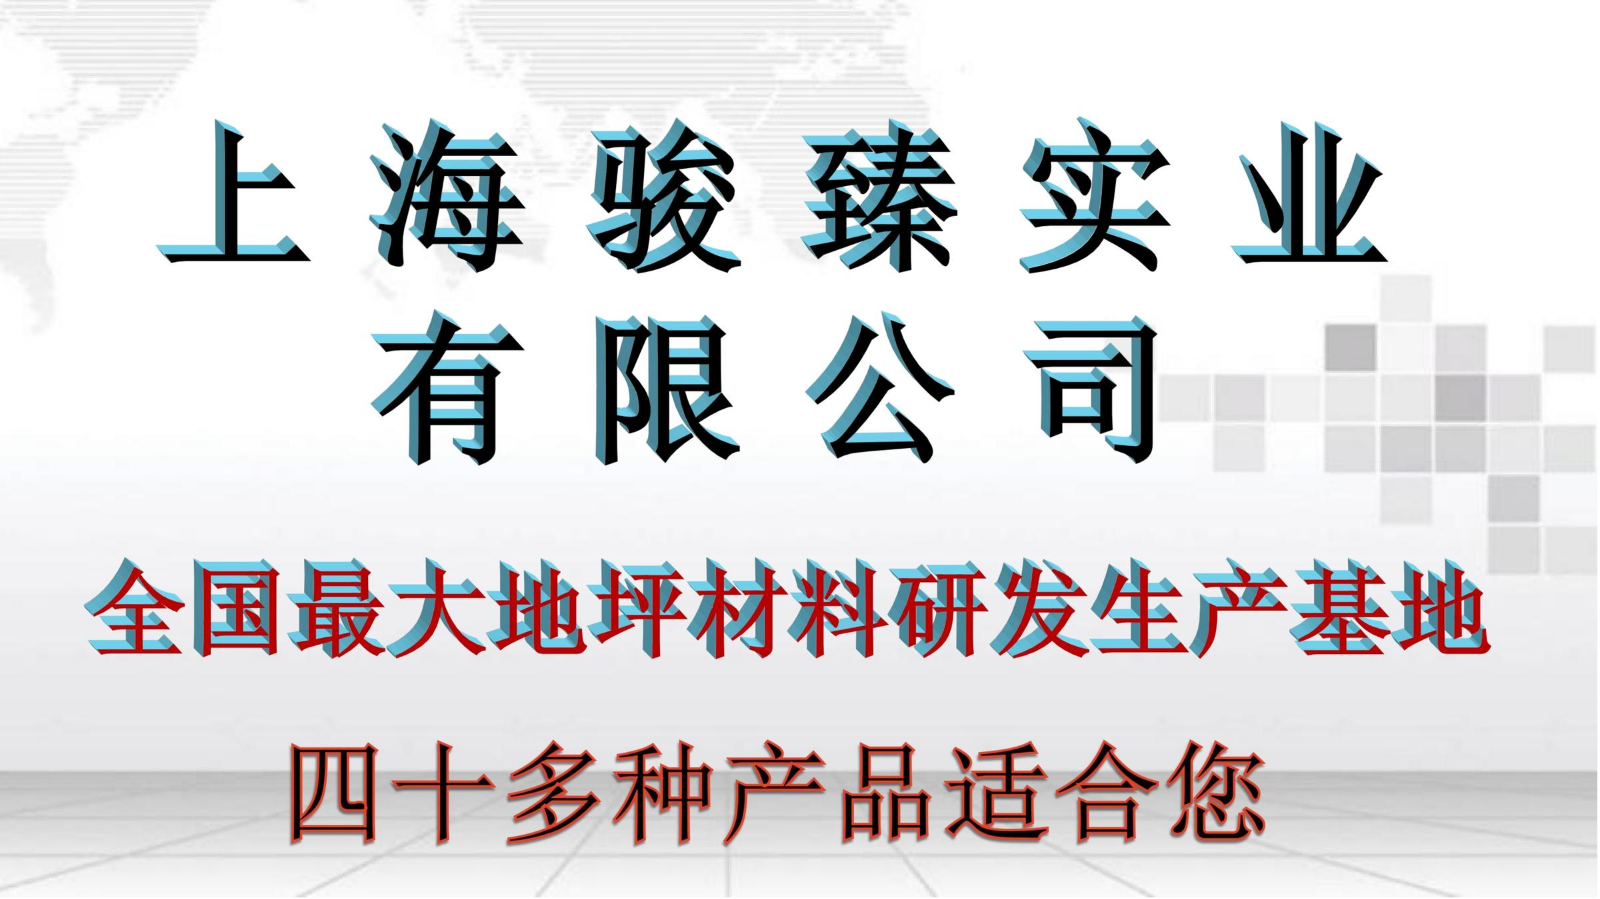 上海骏臻46种高科技产品  刘晶